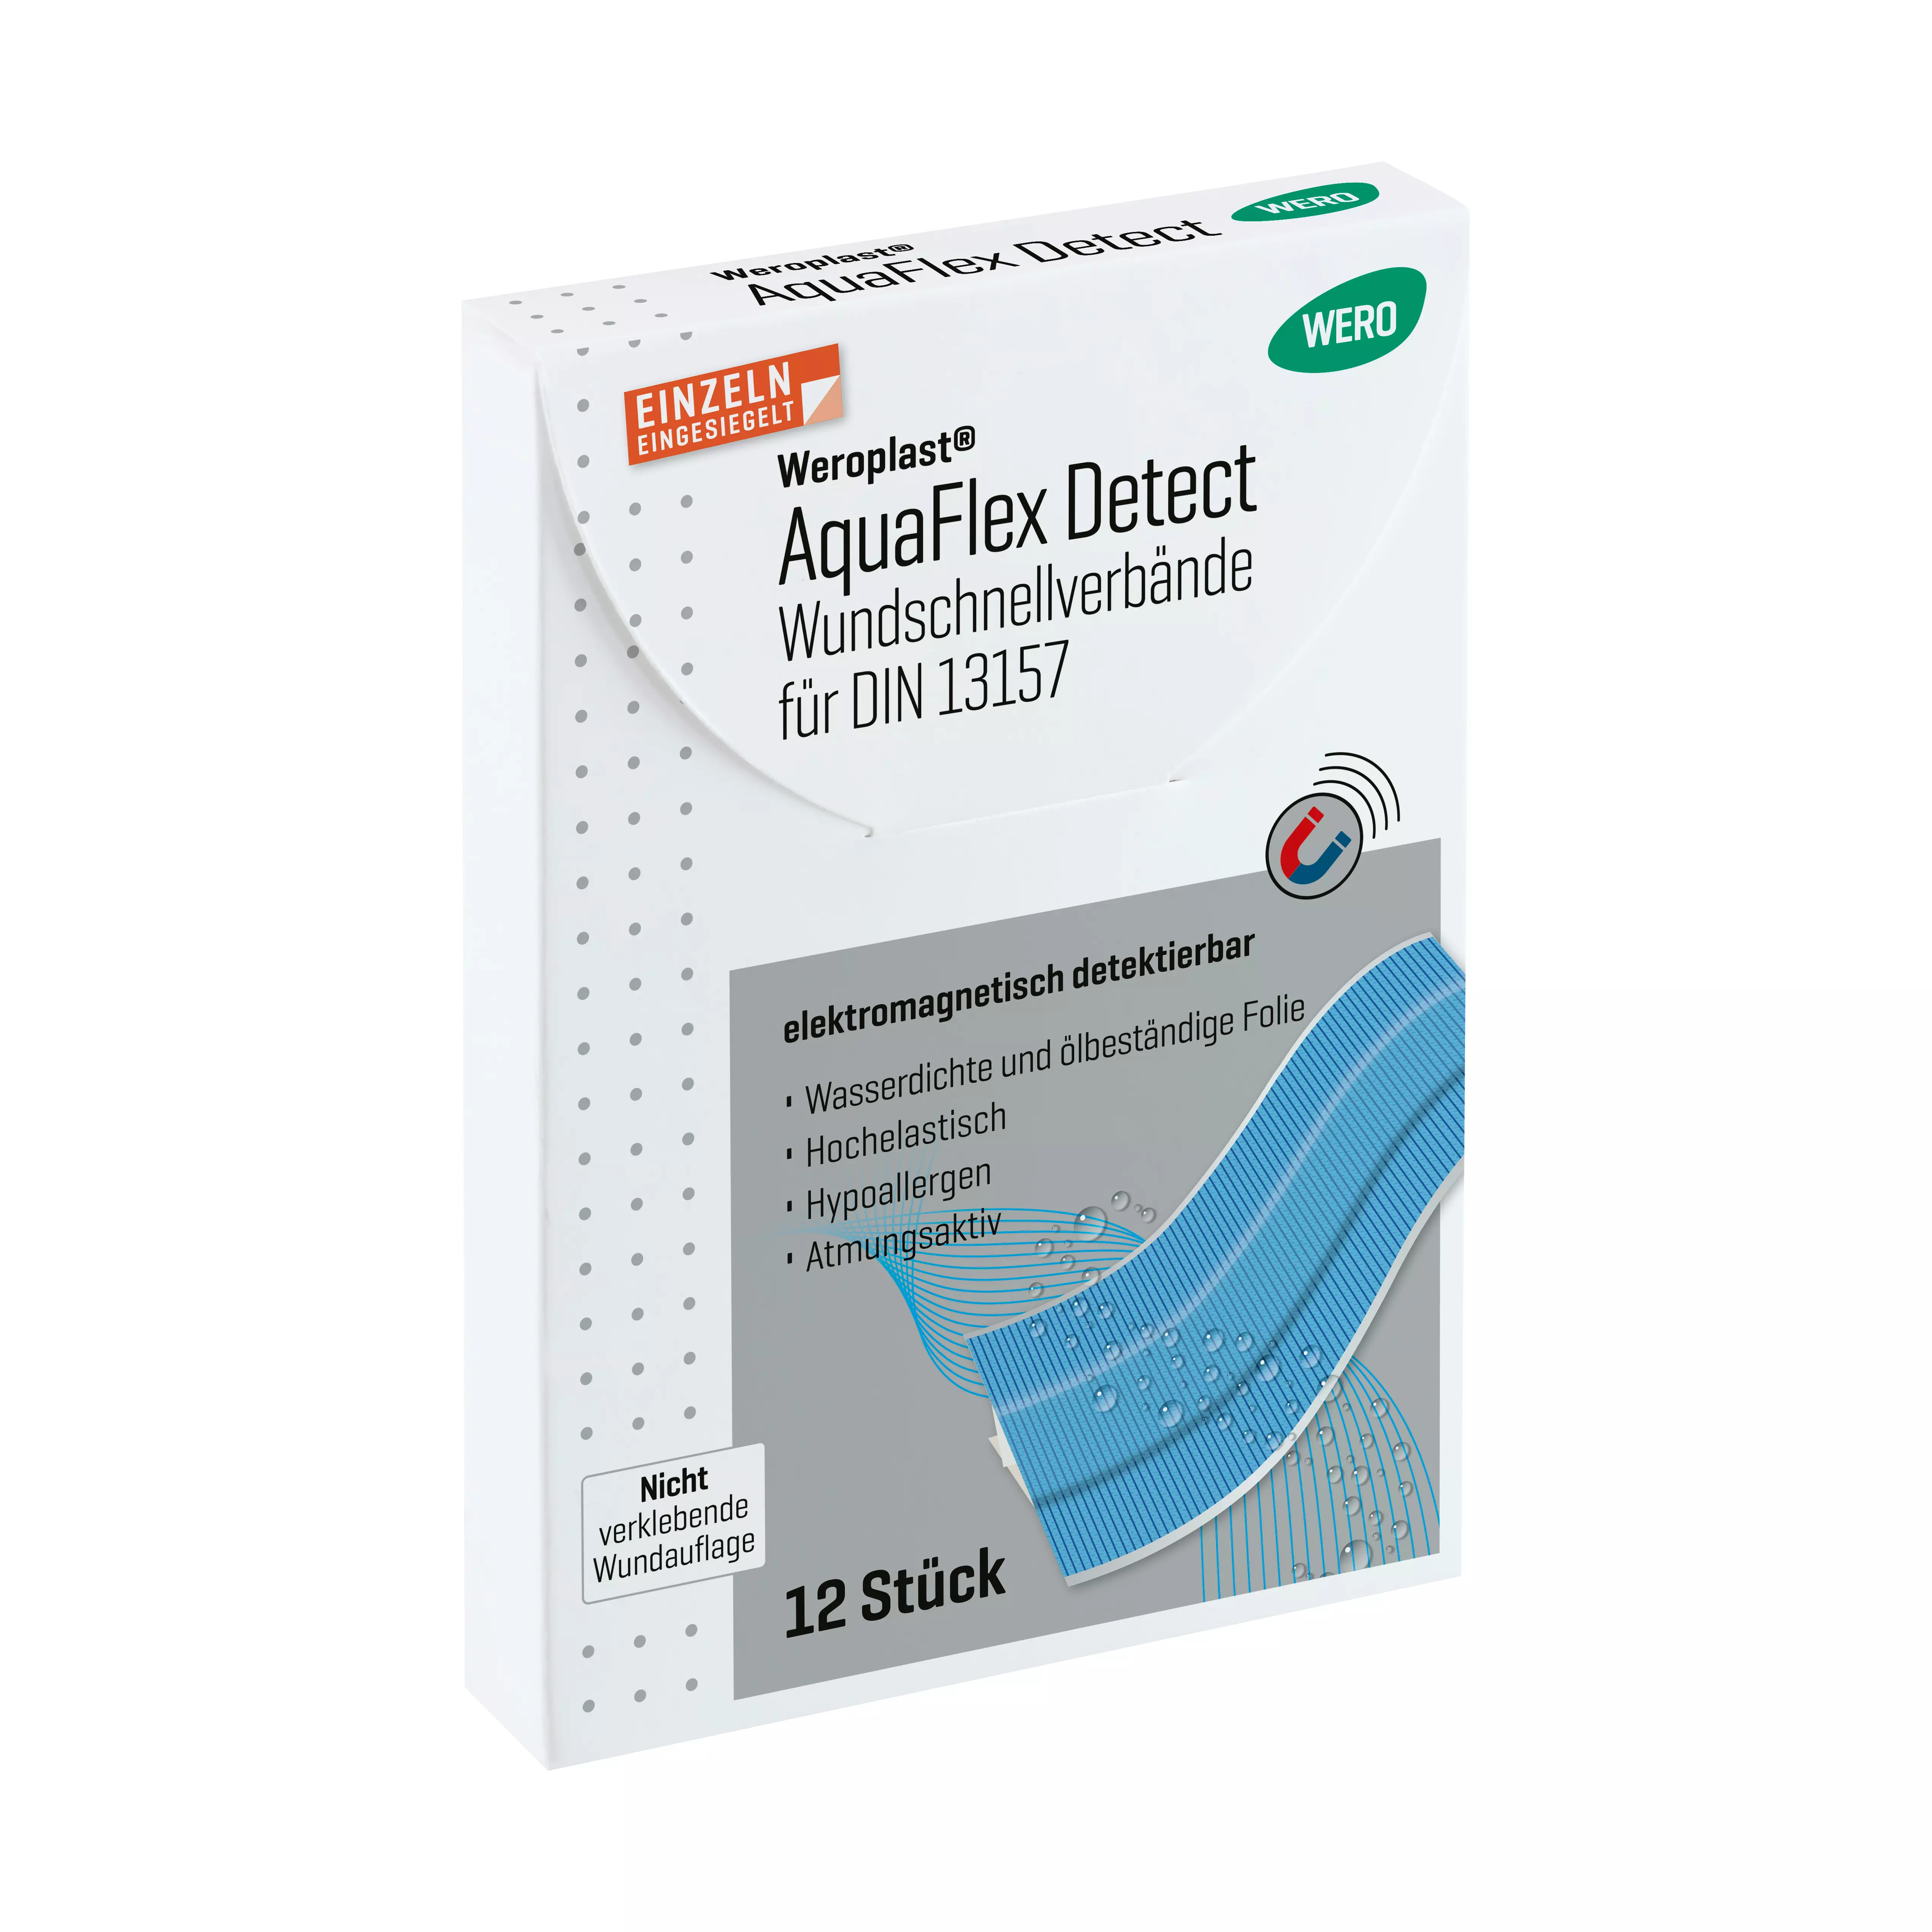 Weroplast® AquaFlex Detect Pflaster - Wundschnellverbände DIN 13157